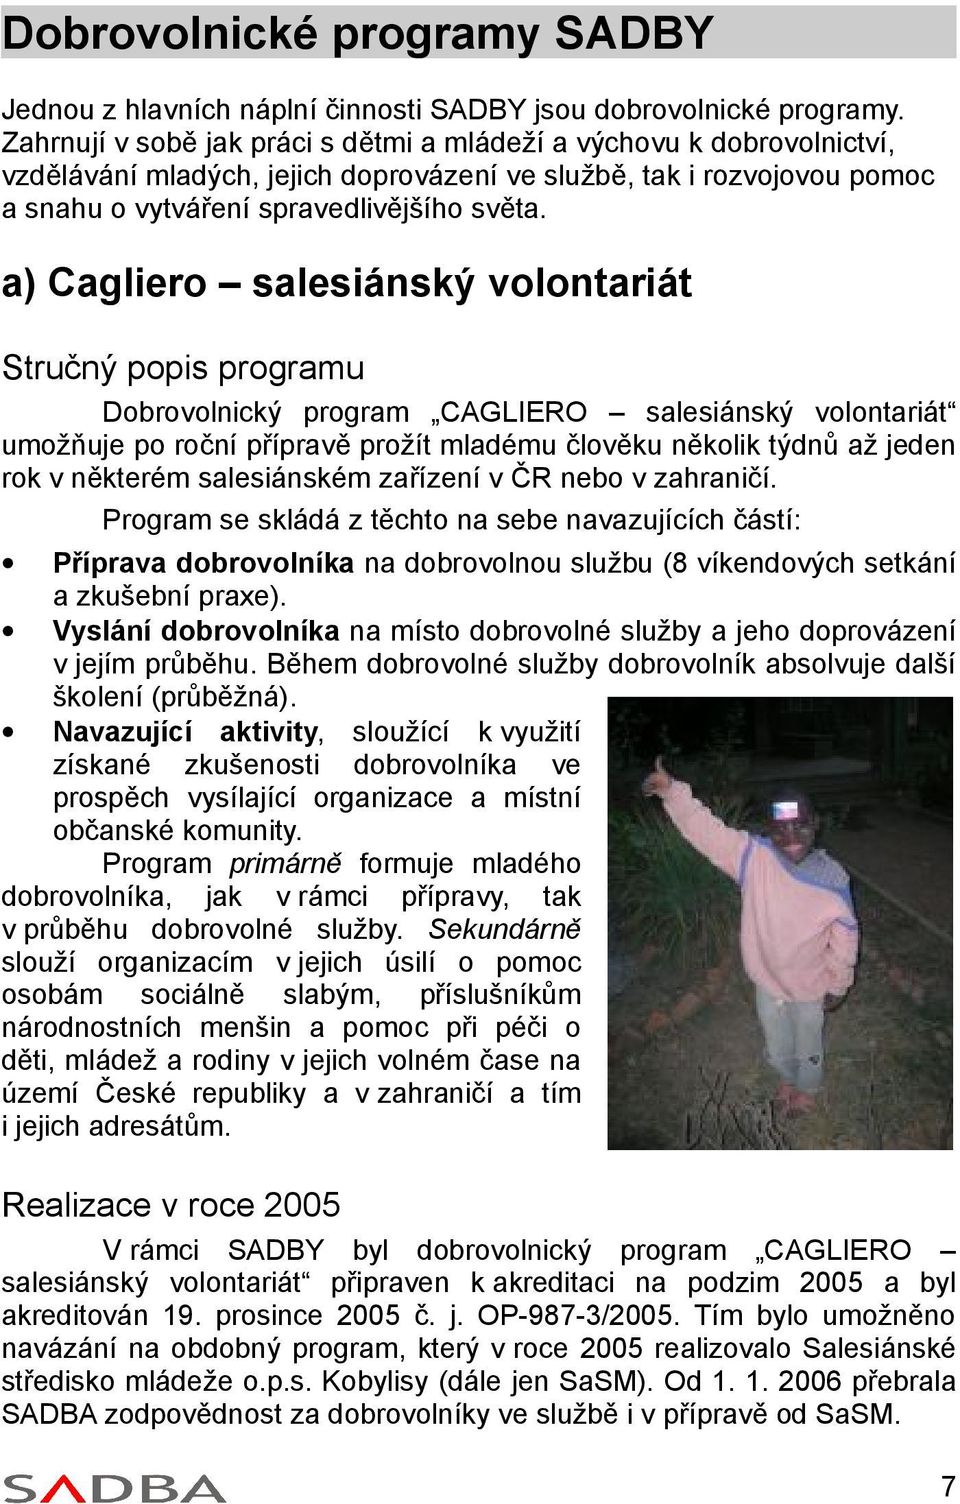 a) Cagliero salesiánský volontariát Stručný popis programu Dobrovolnický program CAGLIERO salesiánský volontariát umožňuje po roční přípravě prožít mladému člověku několik týdnů až jeden rok v